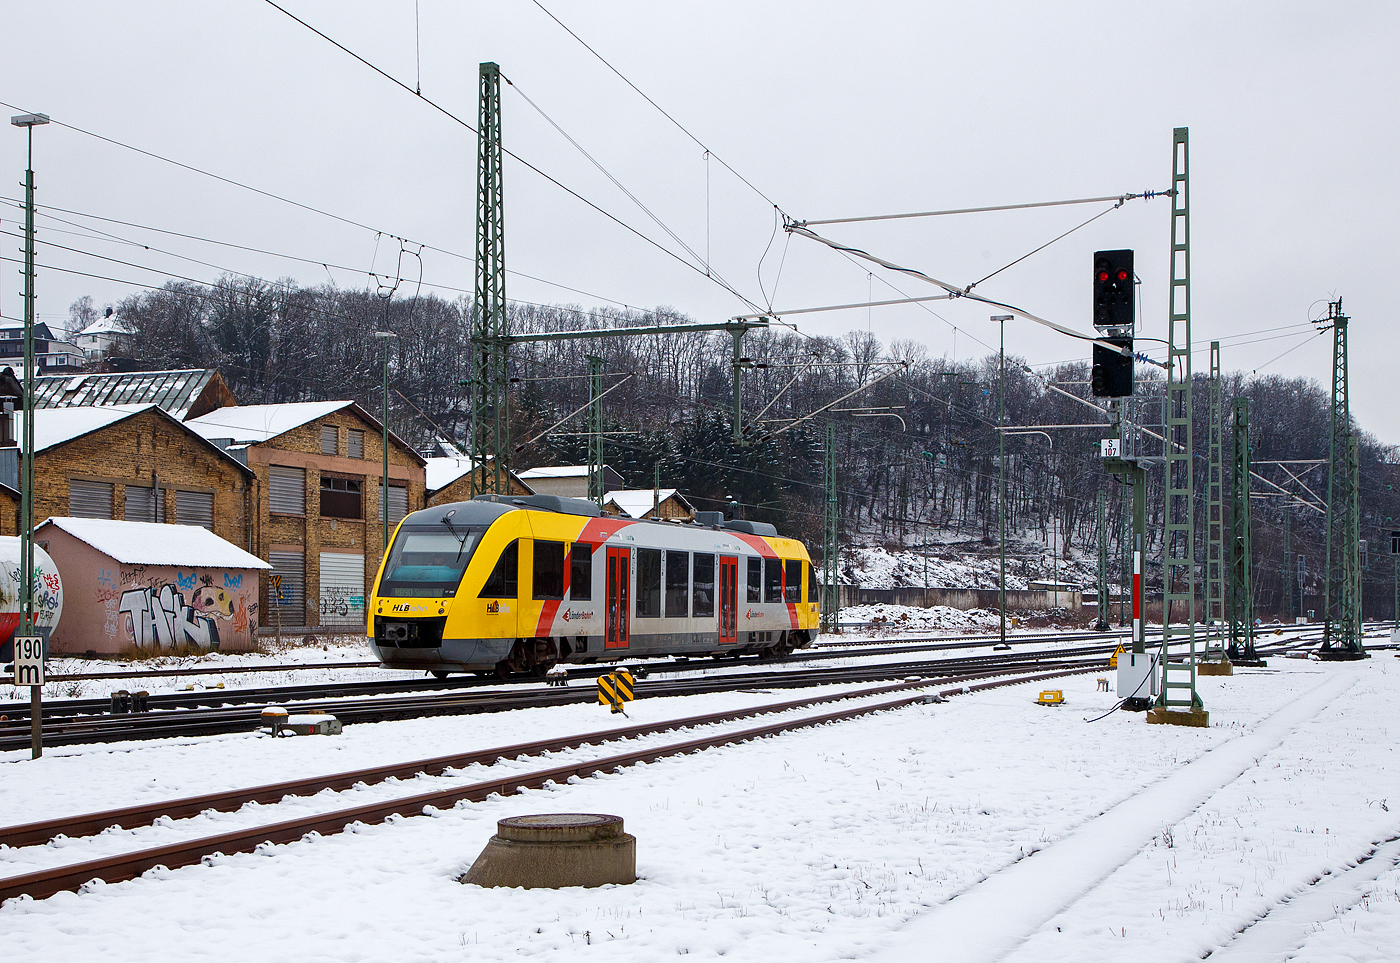 Der VT 209 ABp (95 80 0640 109-4 D-HEB), ein Alstom Coradia LINT 27 der HLB (Hessische Landesbahn). ex Vectus VT 209, erreicht am 08.03.2023 den Bahnhof Betzdorf (Sieg). Er fährt als RB 90  Westerwald-Sieg-Bahn  die Verbindung Altenkirchen(Westerwald) – Au(Sieg) – Siegen.

Der Alstom Coradia LINT 27 wurde 2004 von der ALSTOM Transport Deutschland GmbH (vormals LHB - Linke-Hofmann-Busch GmbH) in Salzgitter-Watenstedt unter der Fabriknummer 1187-009 gebaut und an die vectus Verkehrsgesellschaft mbH, mit dem Fahrplanwechsel am 14.12.2014 wurden alle Fahrzeuge der vectus nun Eigentum der HLB.